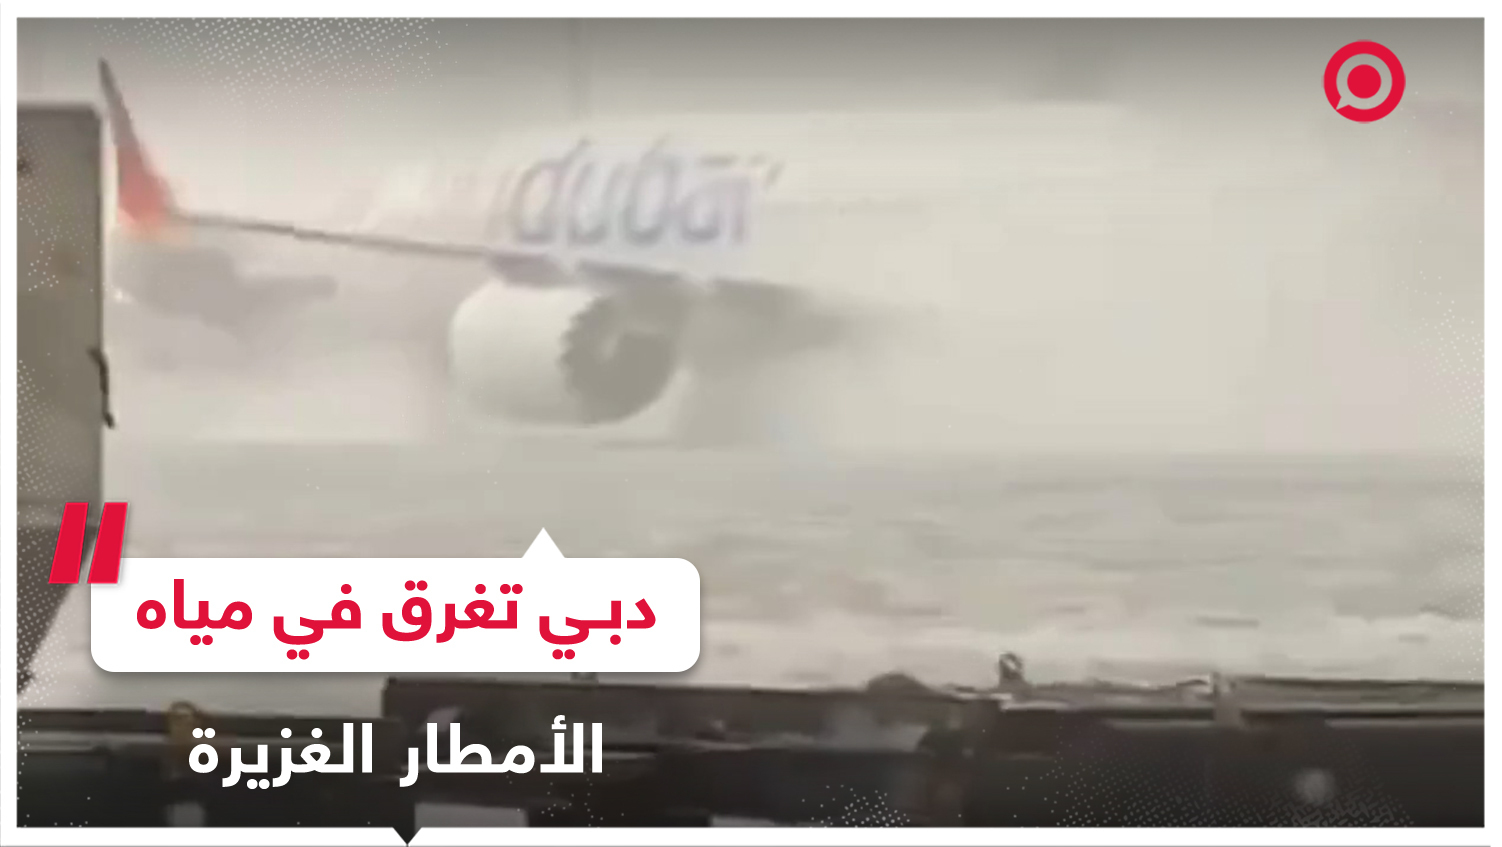 أمطار شديدة وغير مسبوقة تتسبب في شل حركة المطارات في دبي